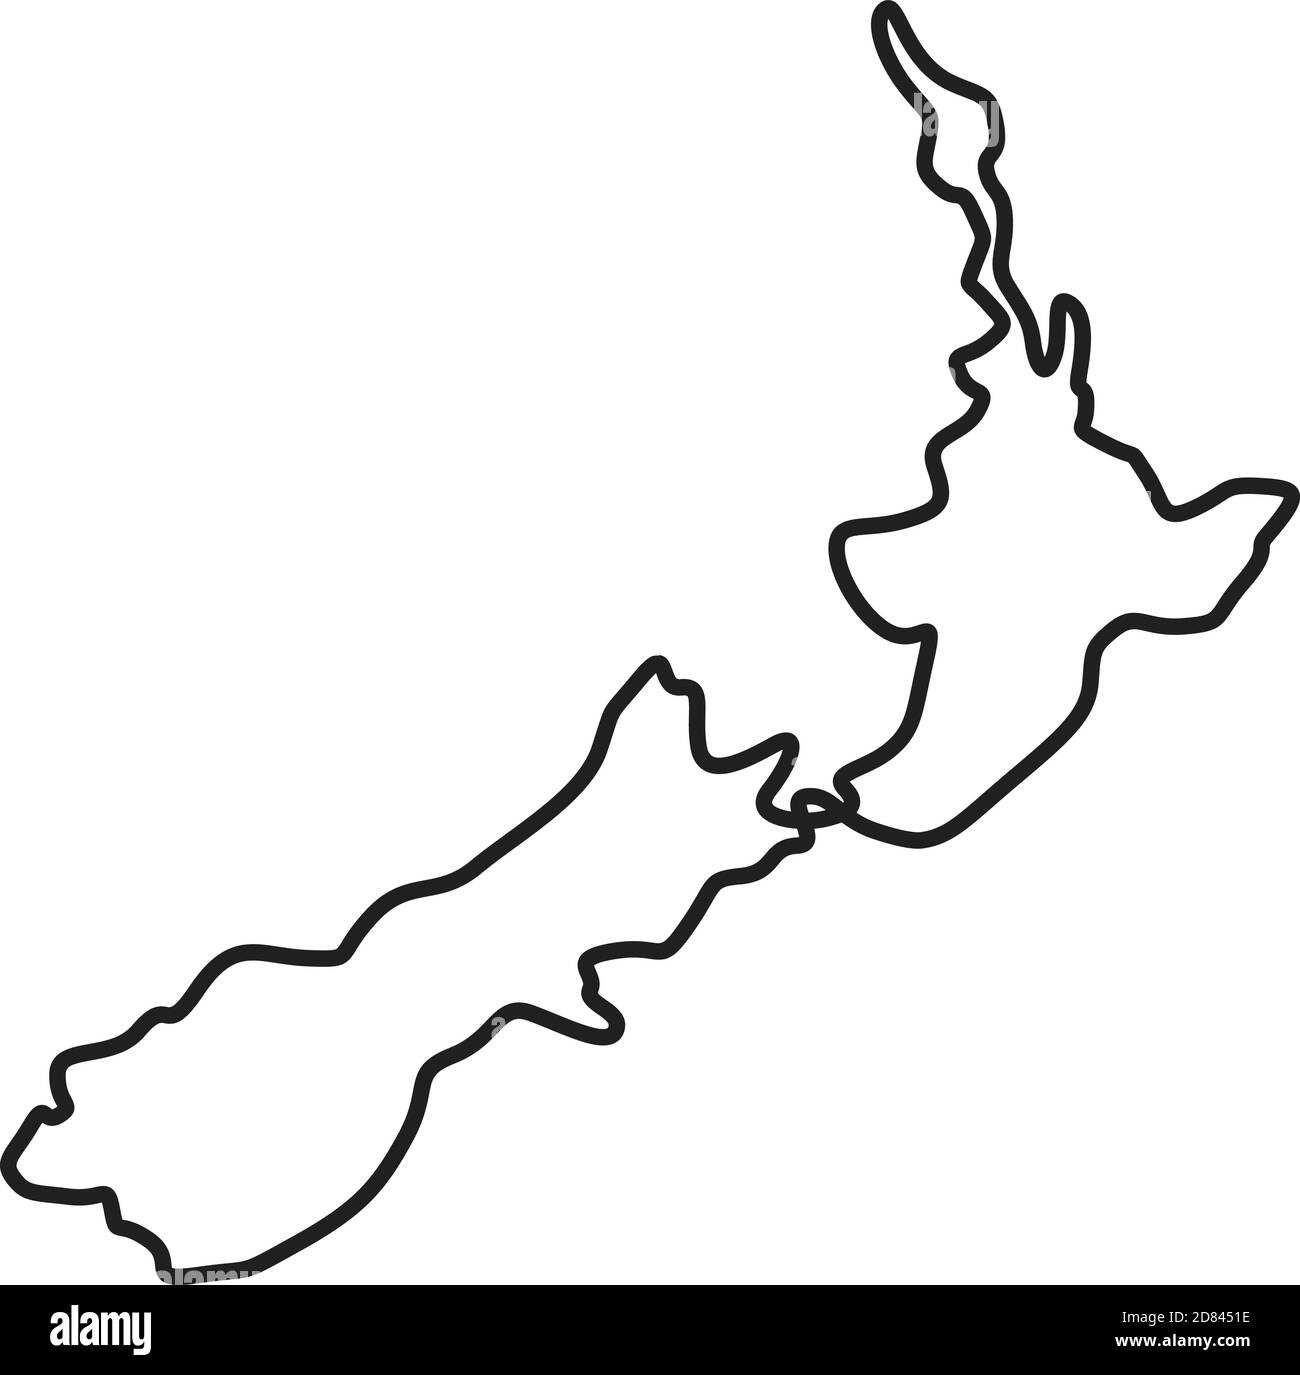 Dessin en ligne continue illustration d'une carte de la Nouvelle-Zélande montrant l'île du Nord et l'île du Sud fait en esquisse ou en forme de coolé. SVG peut b Illustration de Vecteur